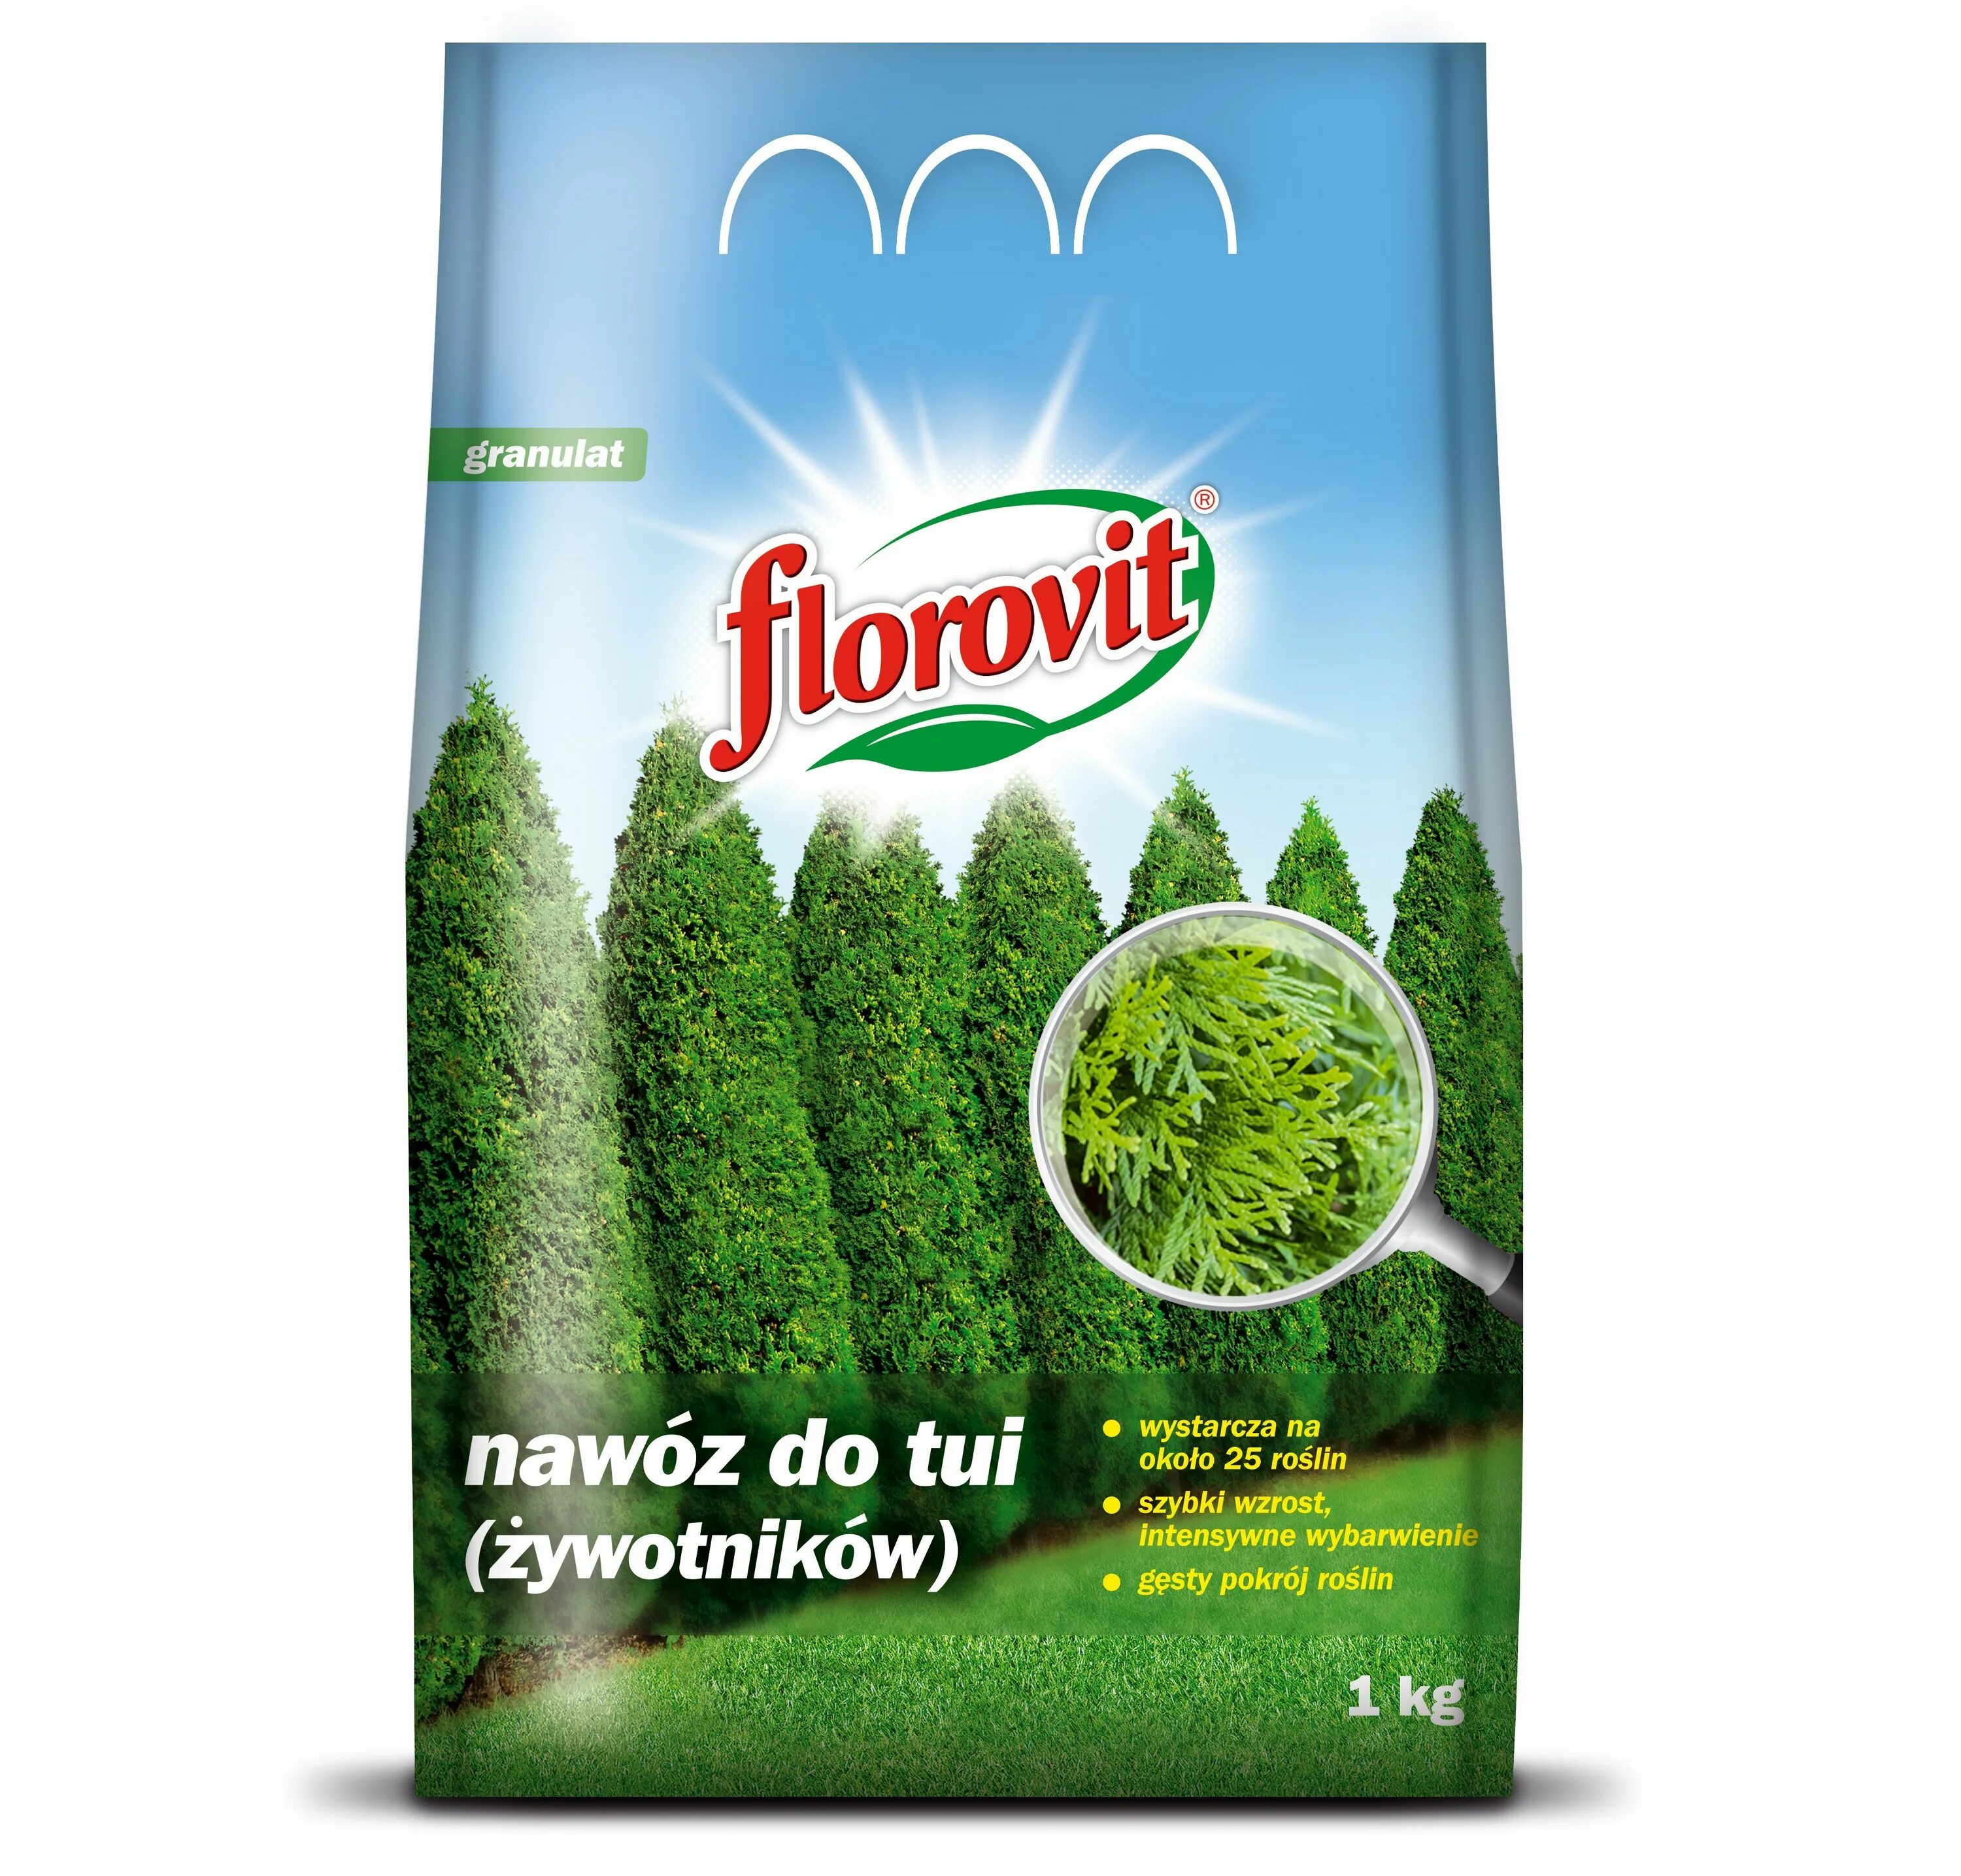 Хом для хвойных. Удобрение Флоровит для туй гранулированный. Удобрение Florovit (Флоровит) для туй гранулированное мешок - 3 кг,. Florovit хвойных растений. Florovit удобрение для хвойных.